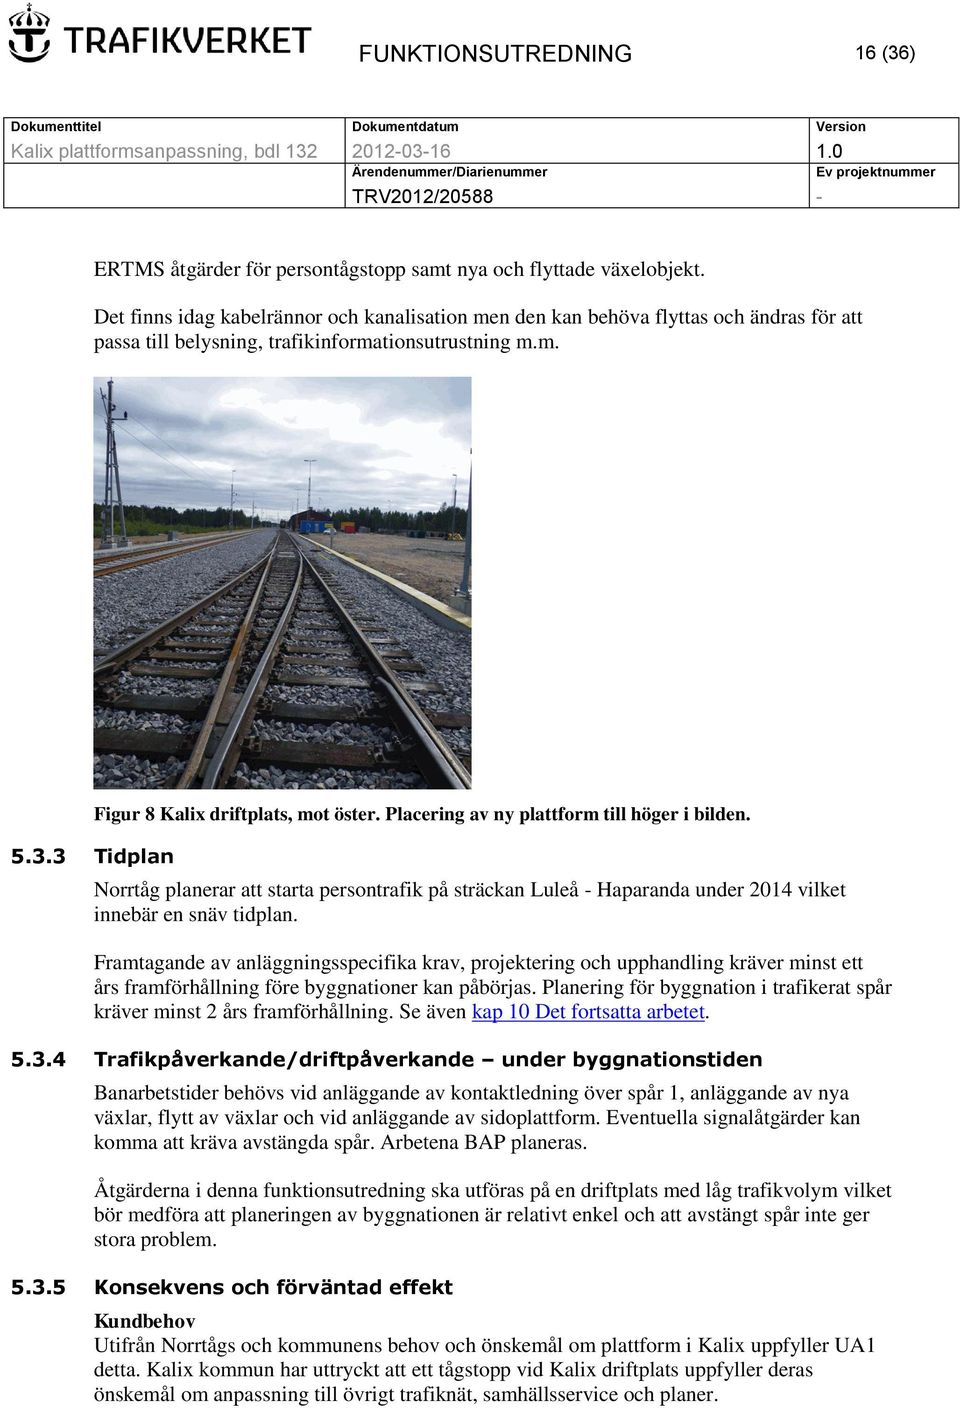 Placering av ny plattform till höger i bilden. Norrtåg planerar att starta persontrafik på sträckan Luleå - Haparanda under 2014 vilket innebär en snäv tidplan.